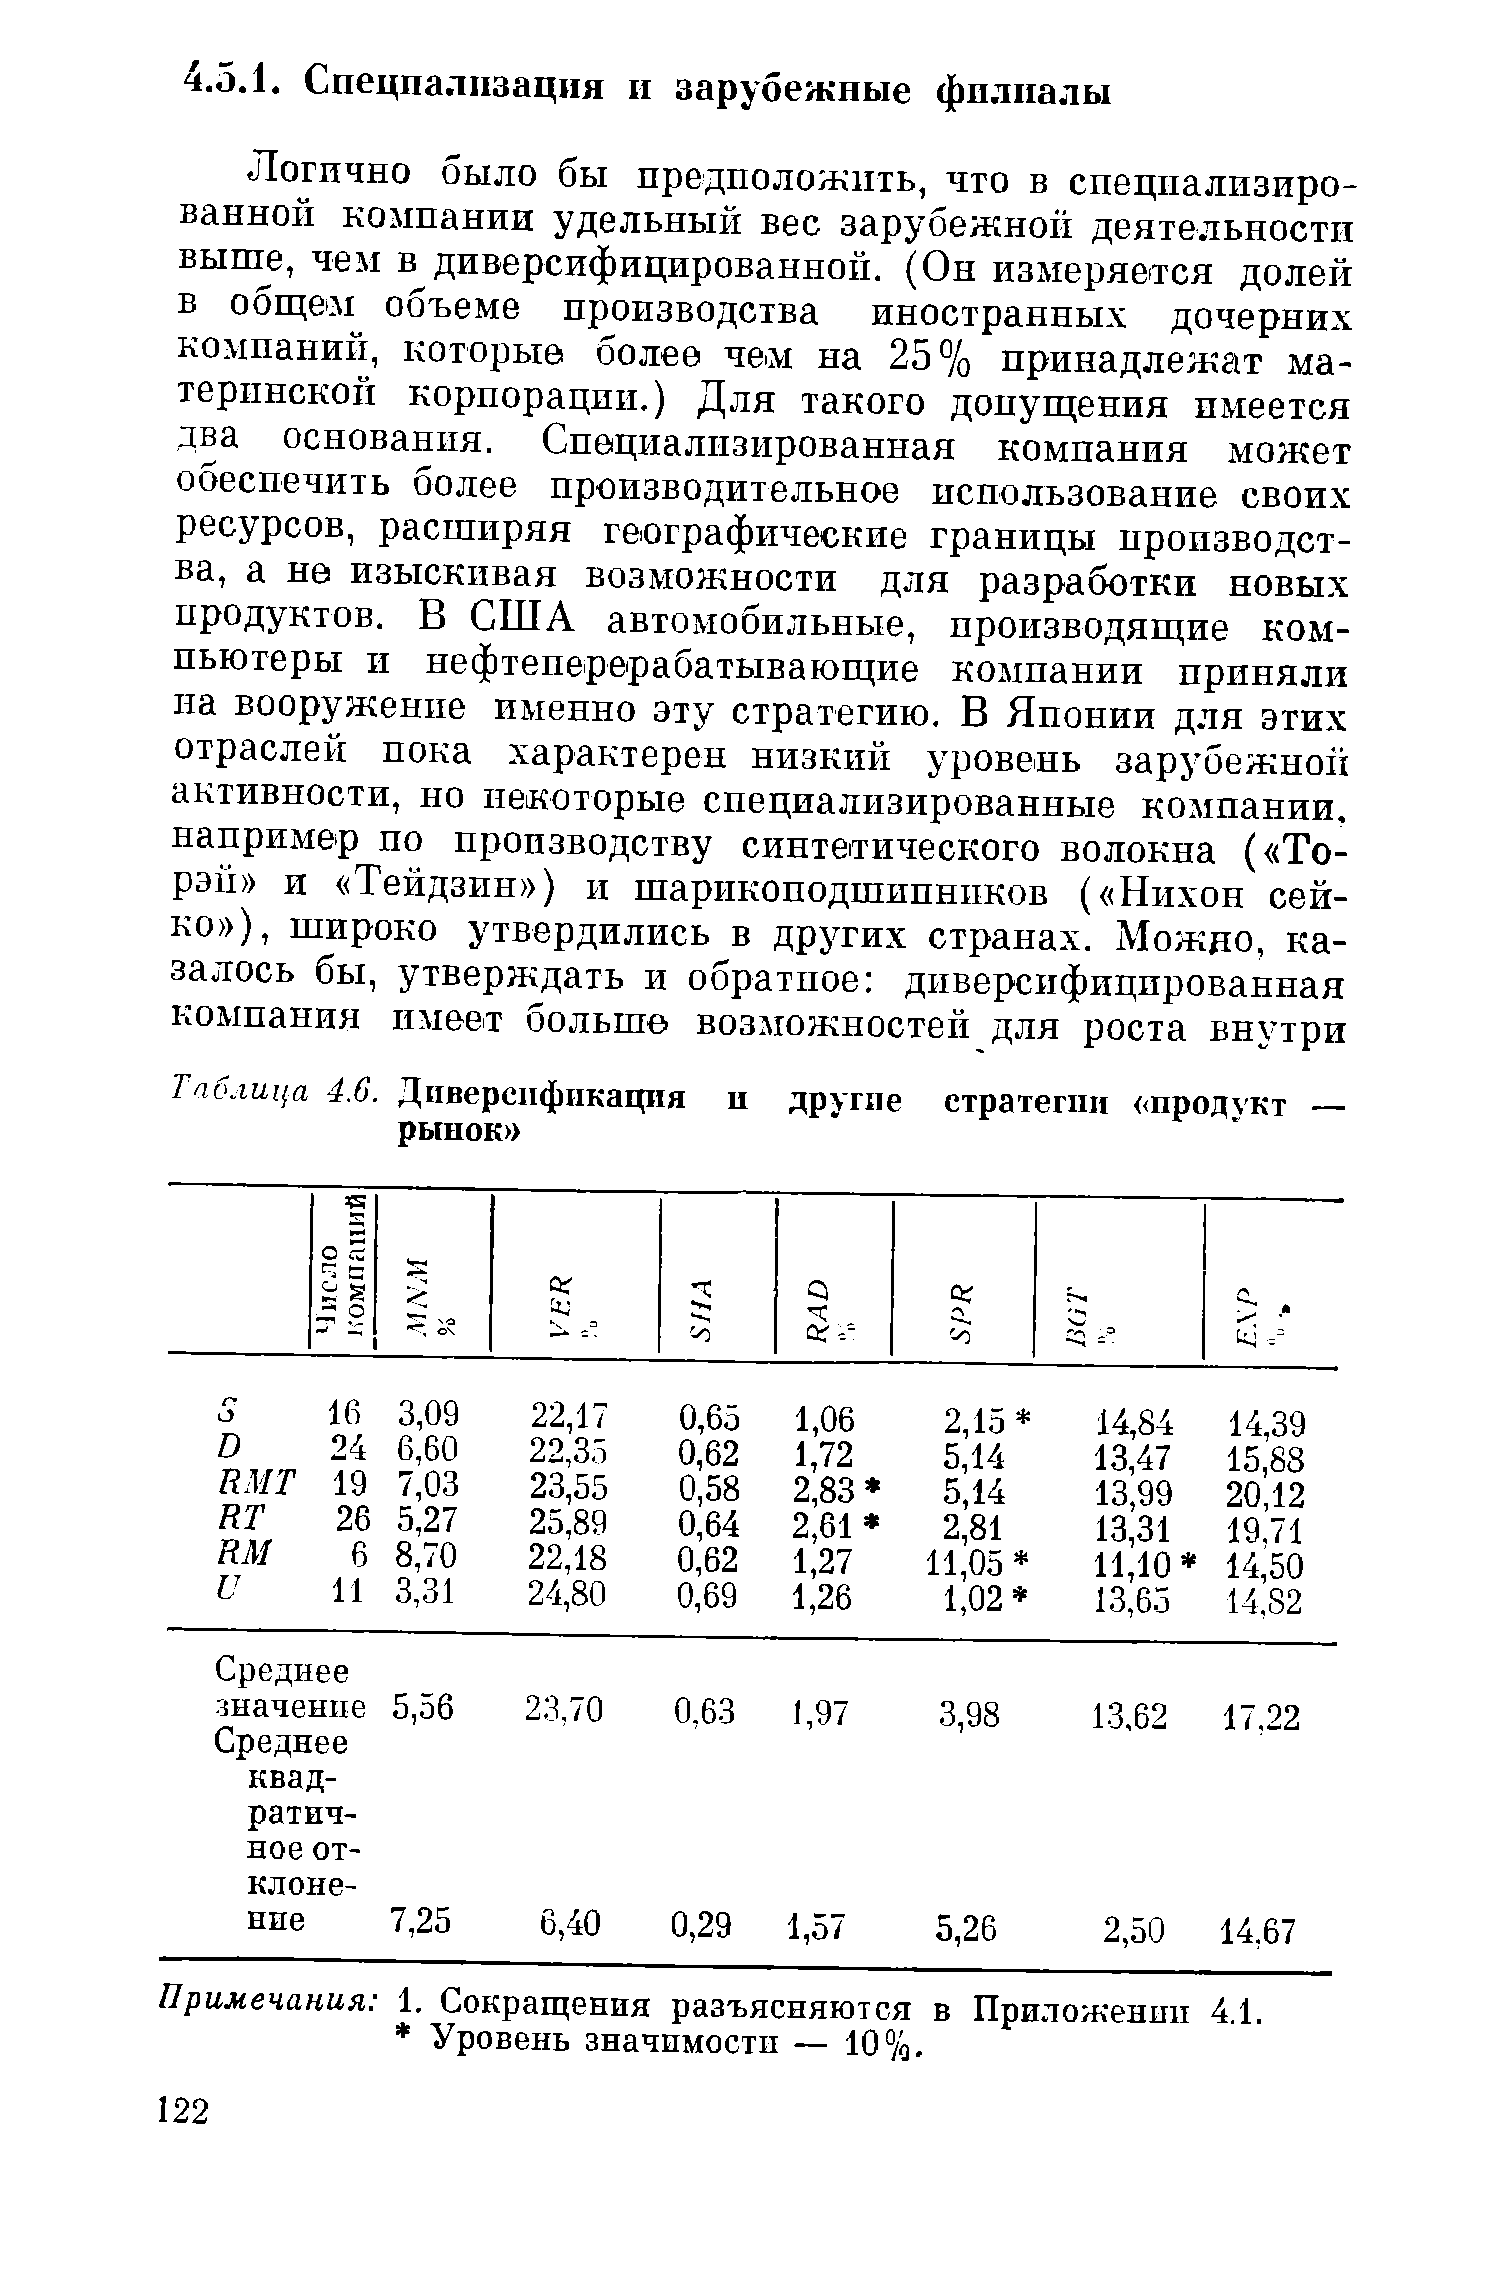 Таблица 4.G. Диверсификация и рынок 
